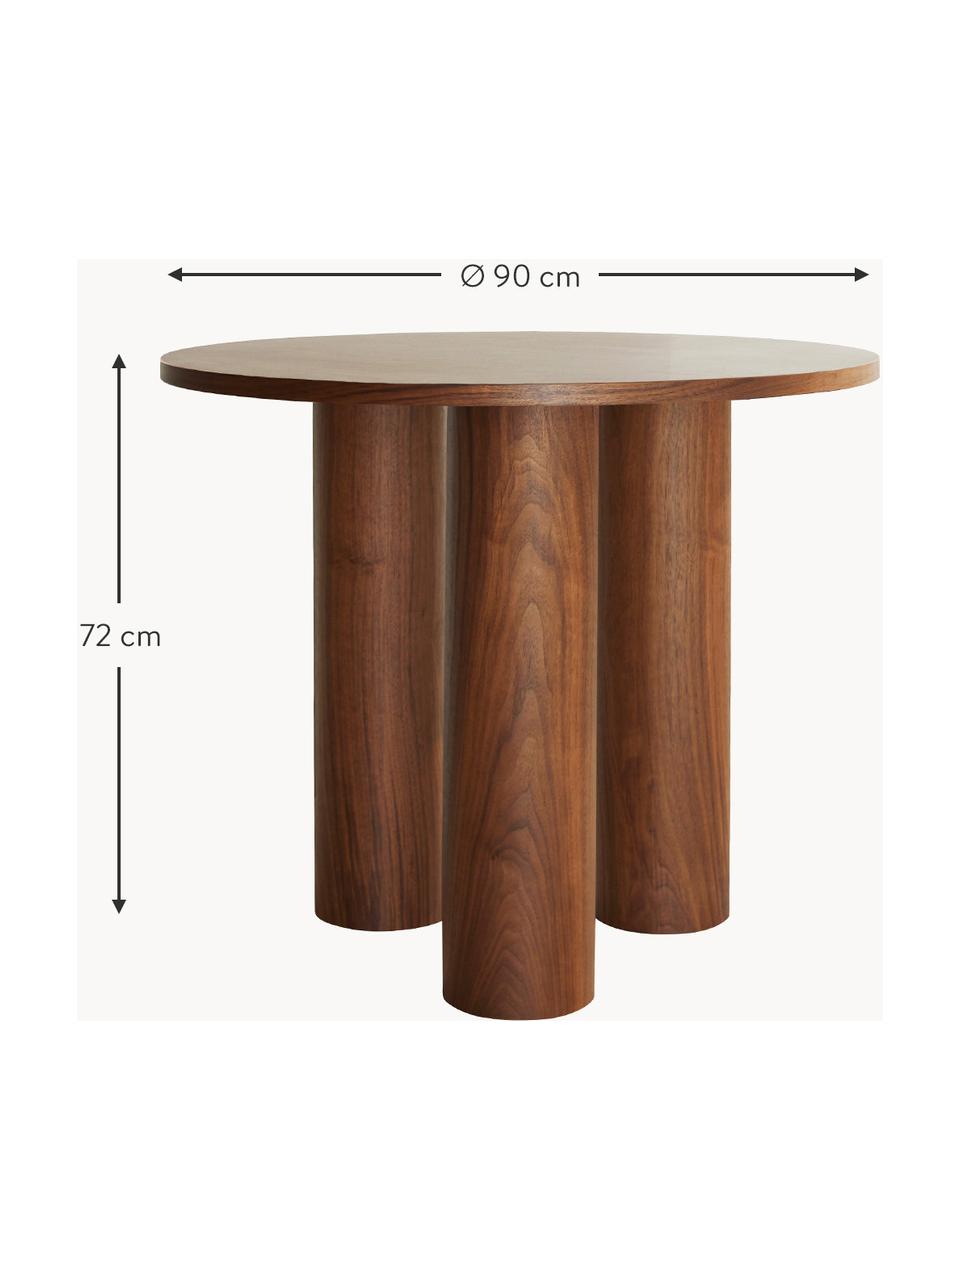 Okrúhly stolík Colette, Ø 90 cm, MDF-doska strednej hustoty, s dyha z orechového dreva

Tento produkt je vyrobený z trvalo udržateľného dreva s certifikátom FSC®., Orechové drevo, Ø 90 cm